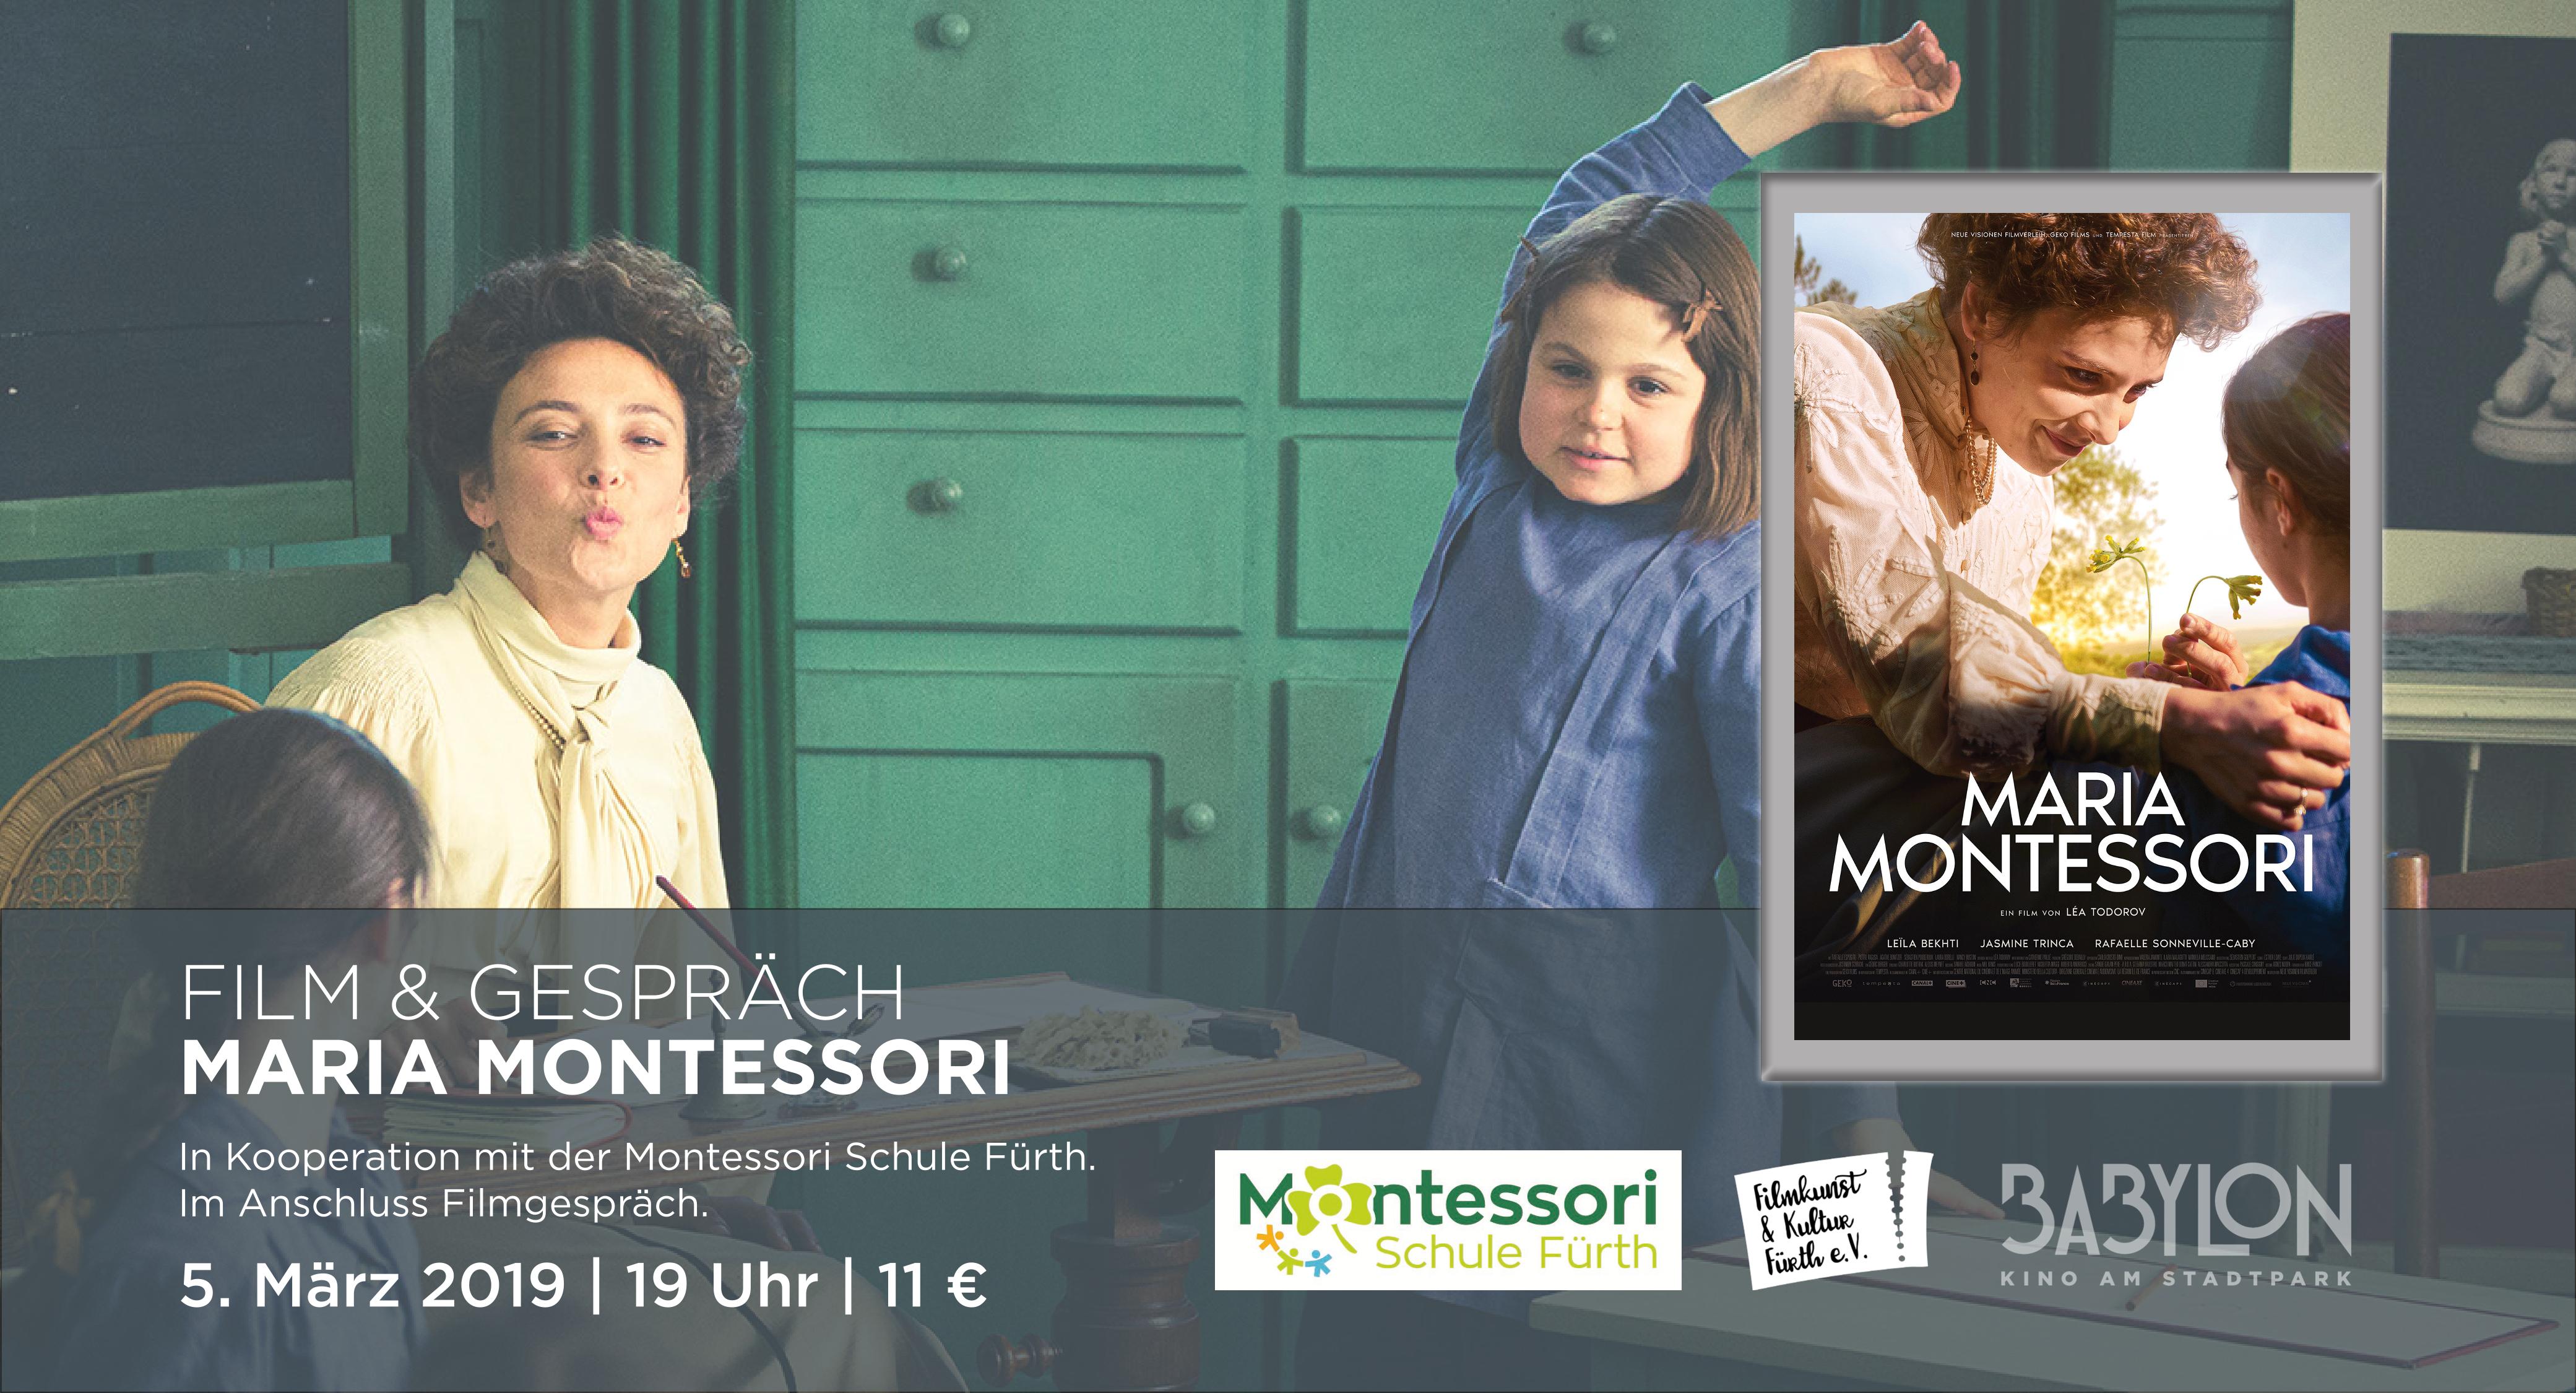 Film und Gespräch Maria Montessori